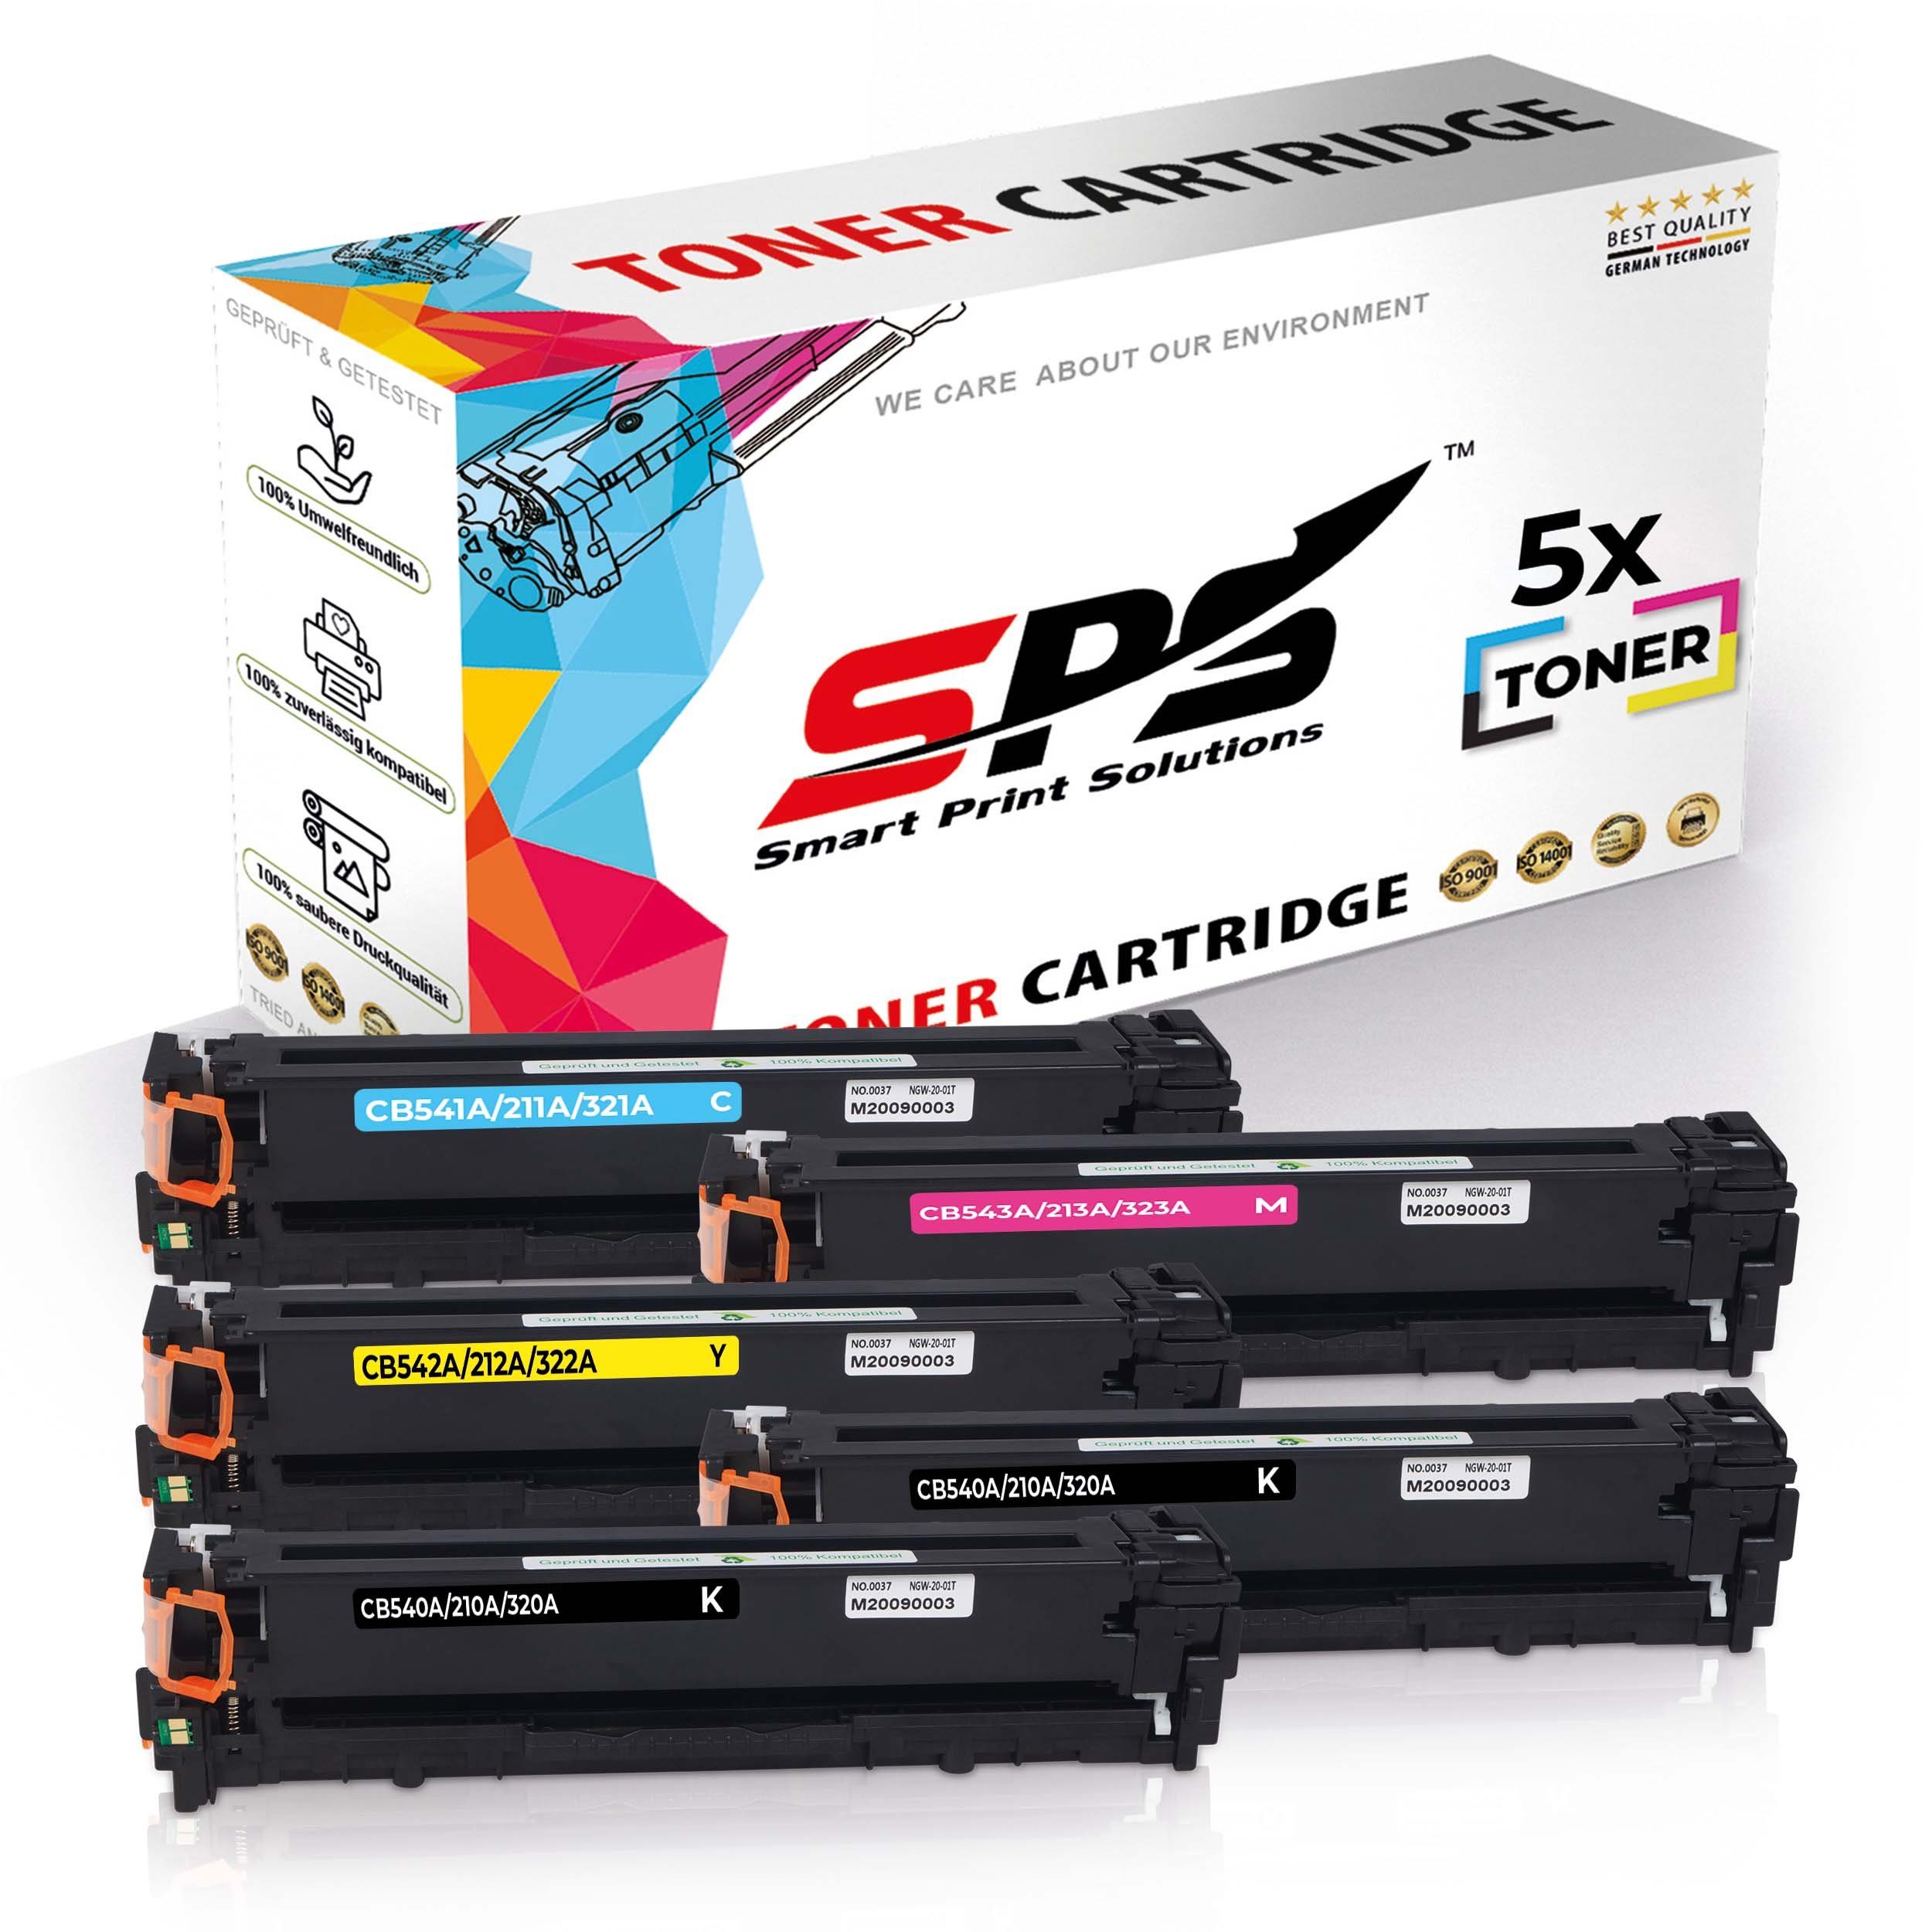 SPS Tonerkartusche 5x Multipack Set Kompatibel für HP Color LaserJet CP 1513 N (125A/CB54, (5er Pack)